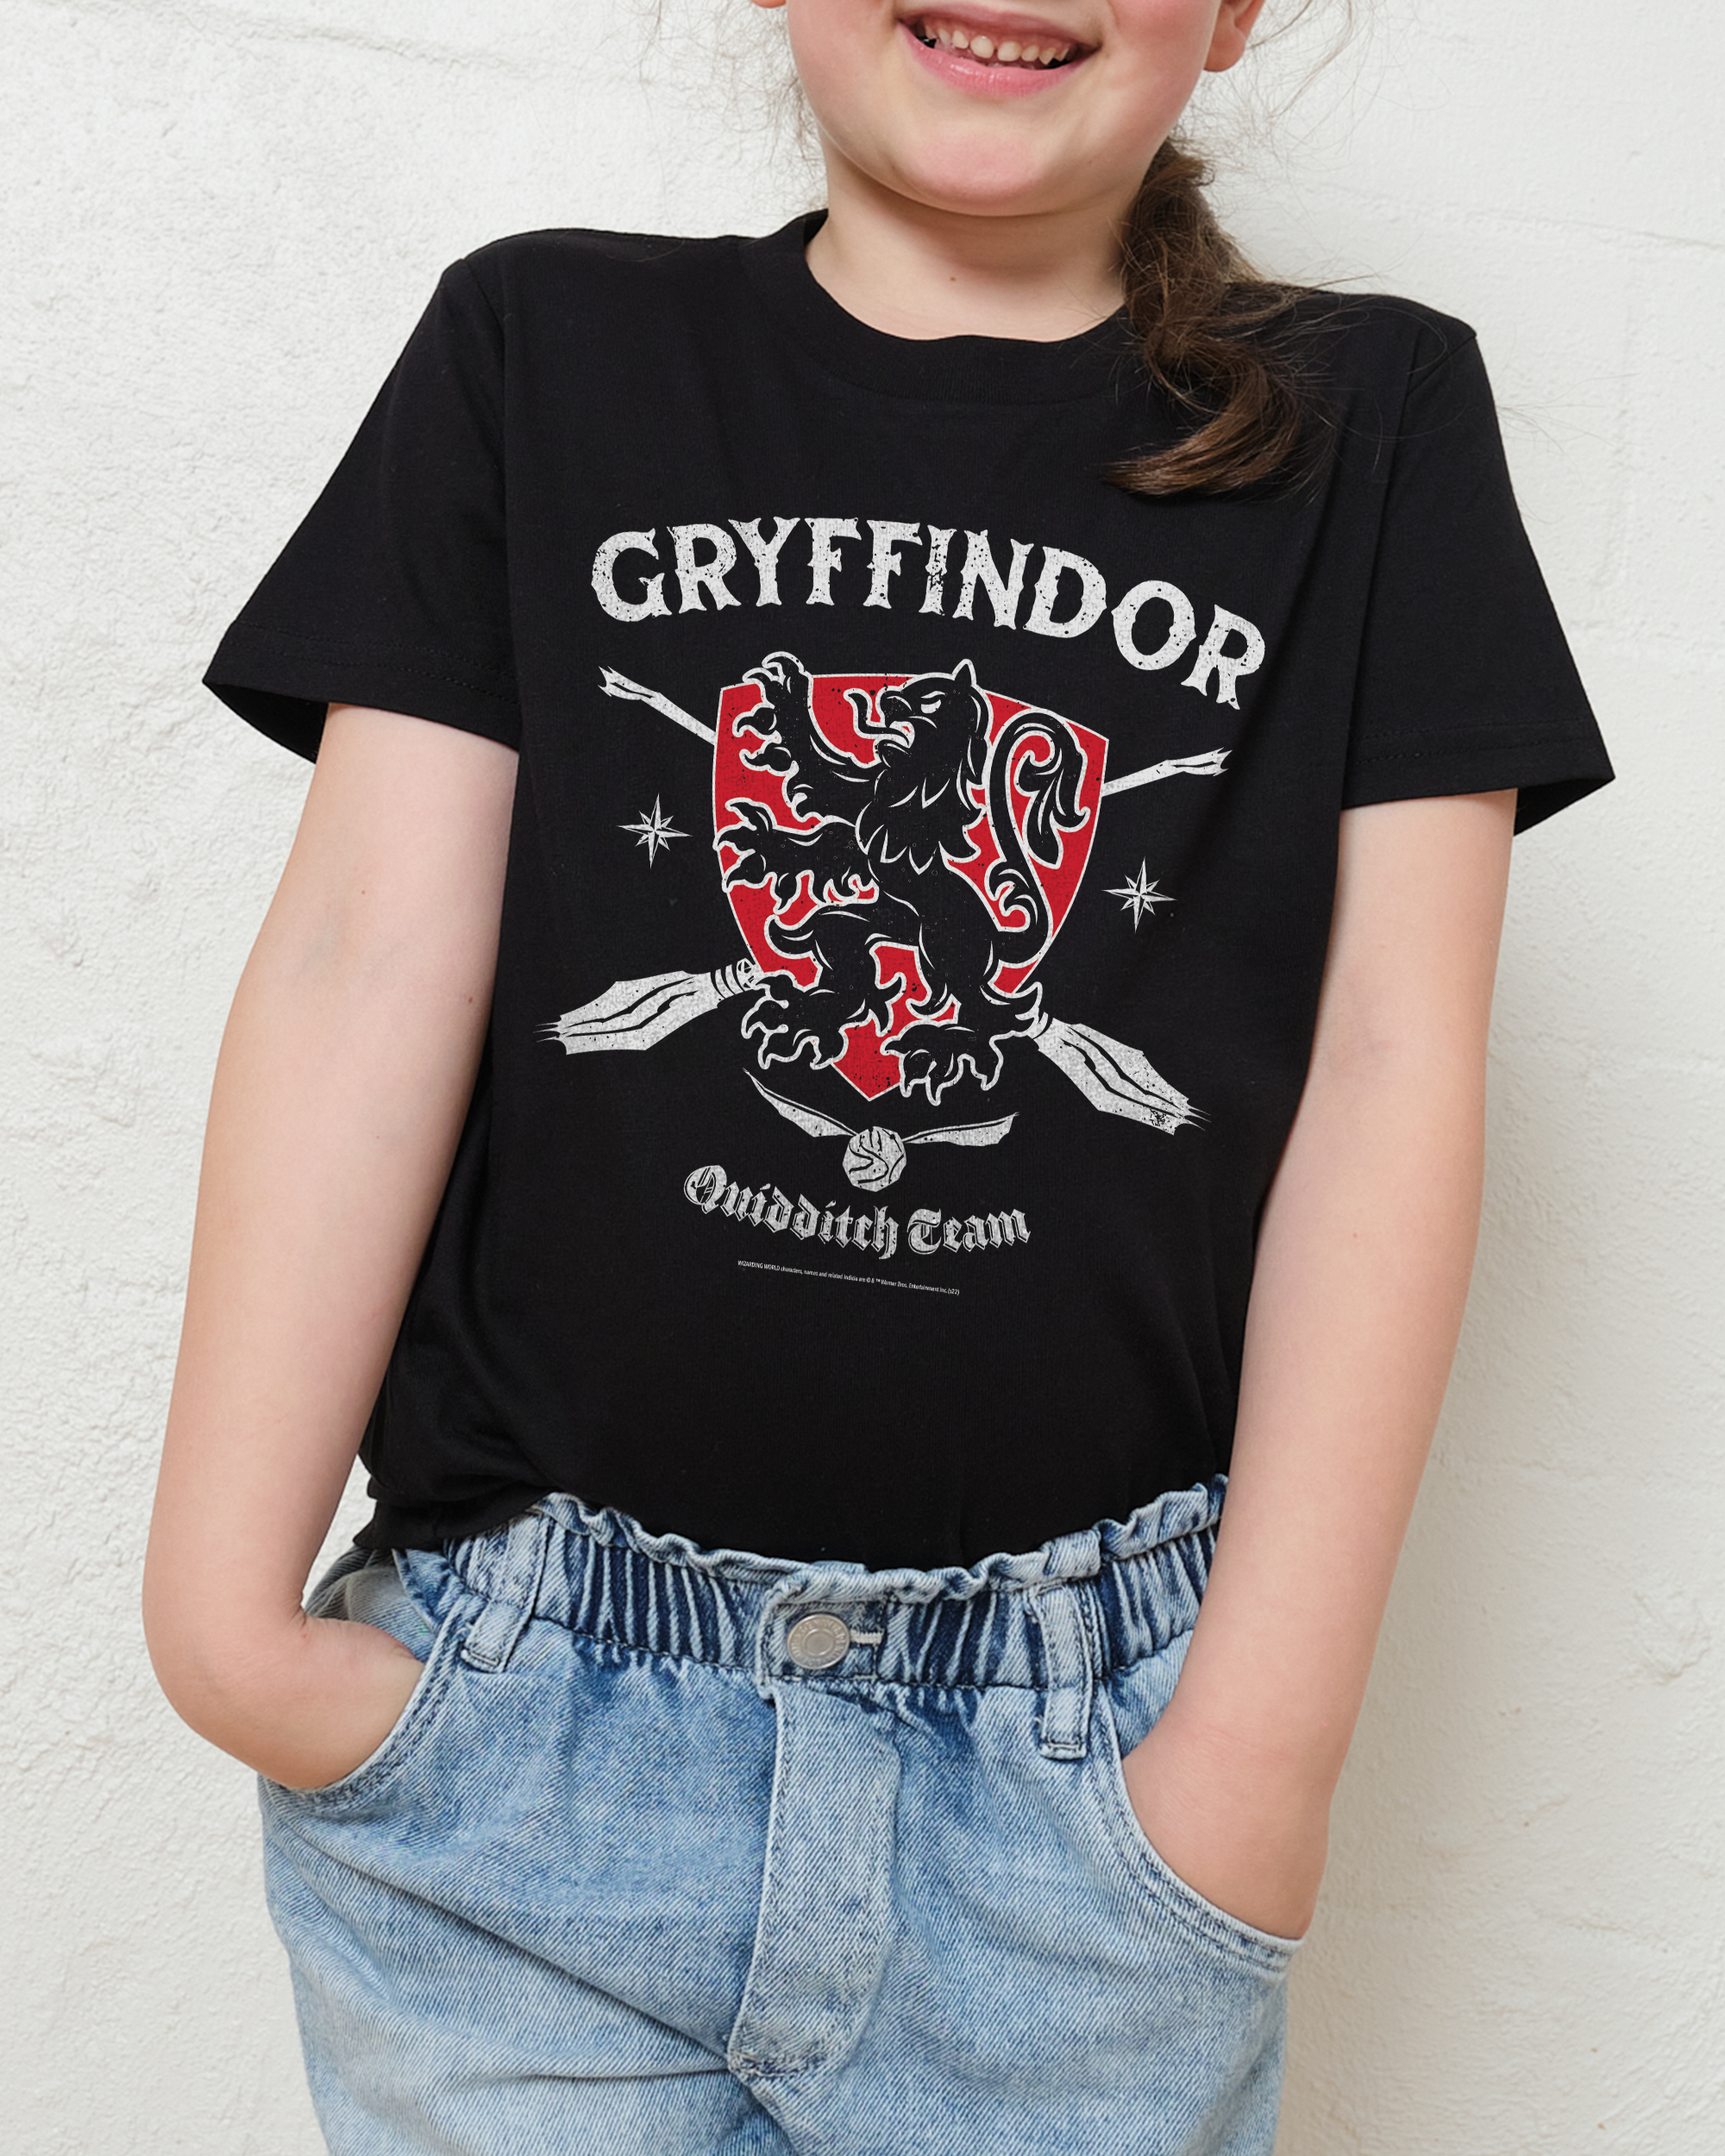 Gryffindor Quidditch Team Kids T-Shirt